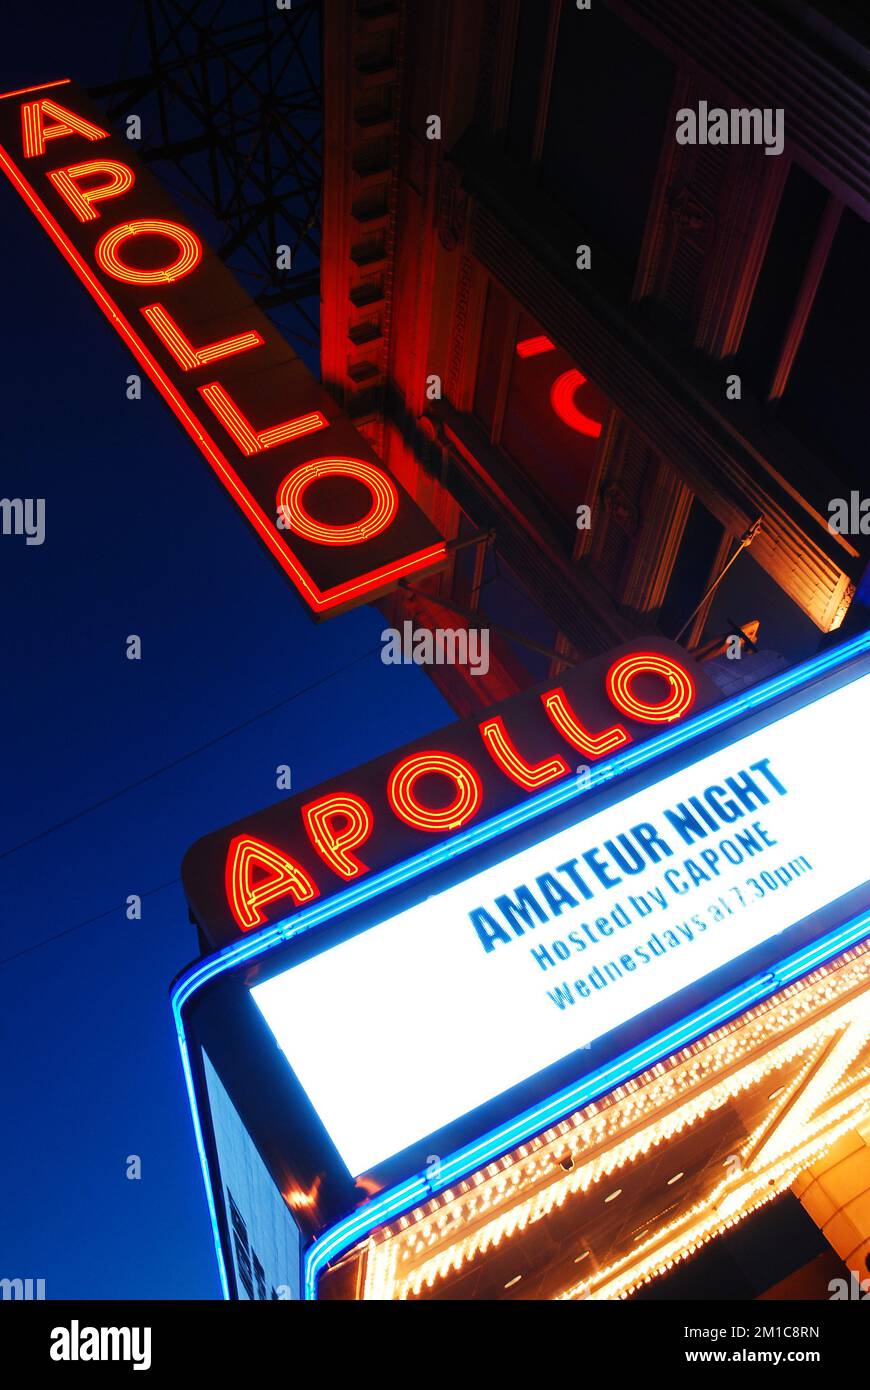 Im Apollo Theater in Harlem, New York City, findet jeden Mittwochabend ein Amateurabend statt, wie in der Abenddämmerung auf dem Festzelt zu sehen ist Stockfoto